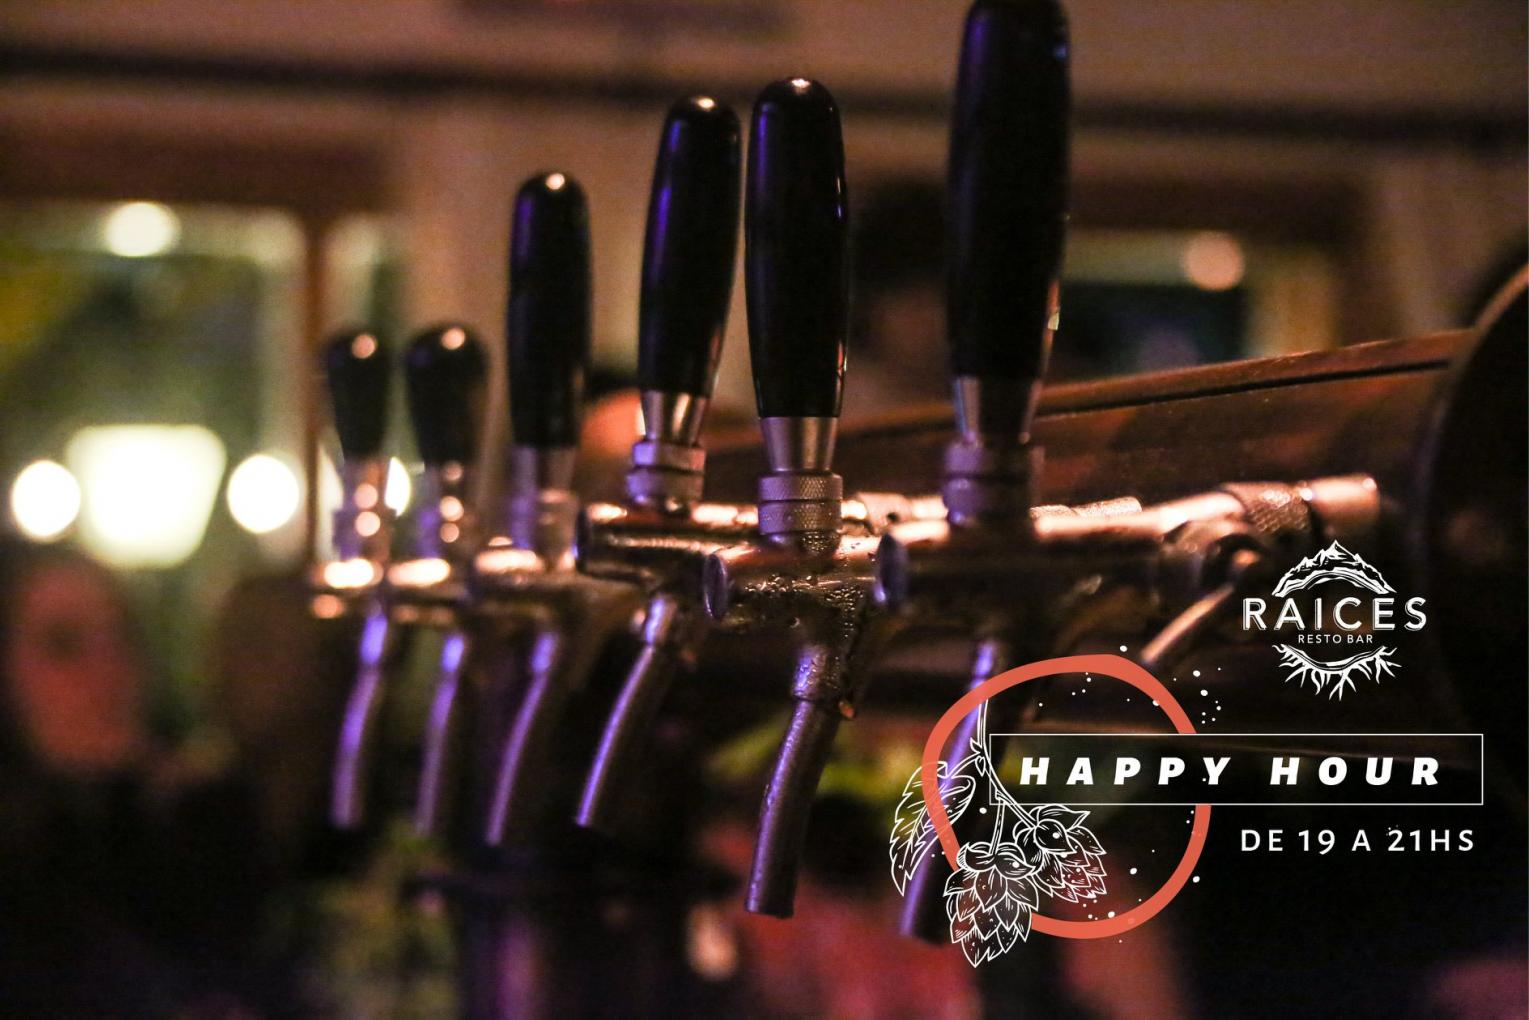 HAPPY HOUR en Raices - Cerveza Artesanal Noninck y Medioevo